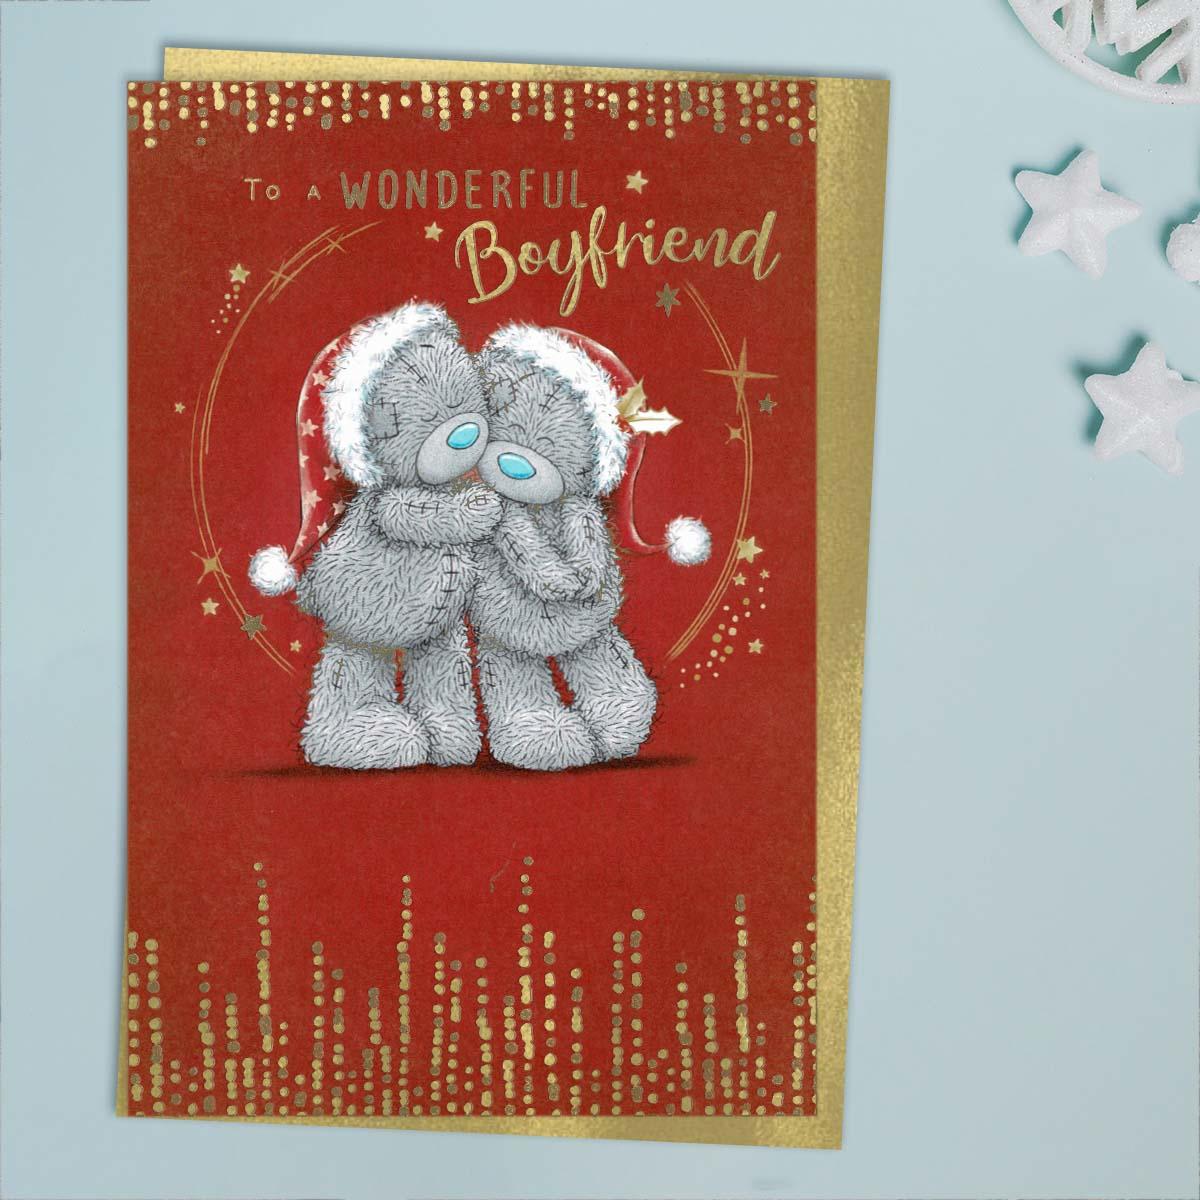 Wonderful Boyfriend Tatty Teddy Christmas Card Front Image